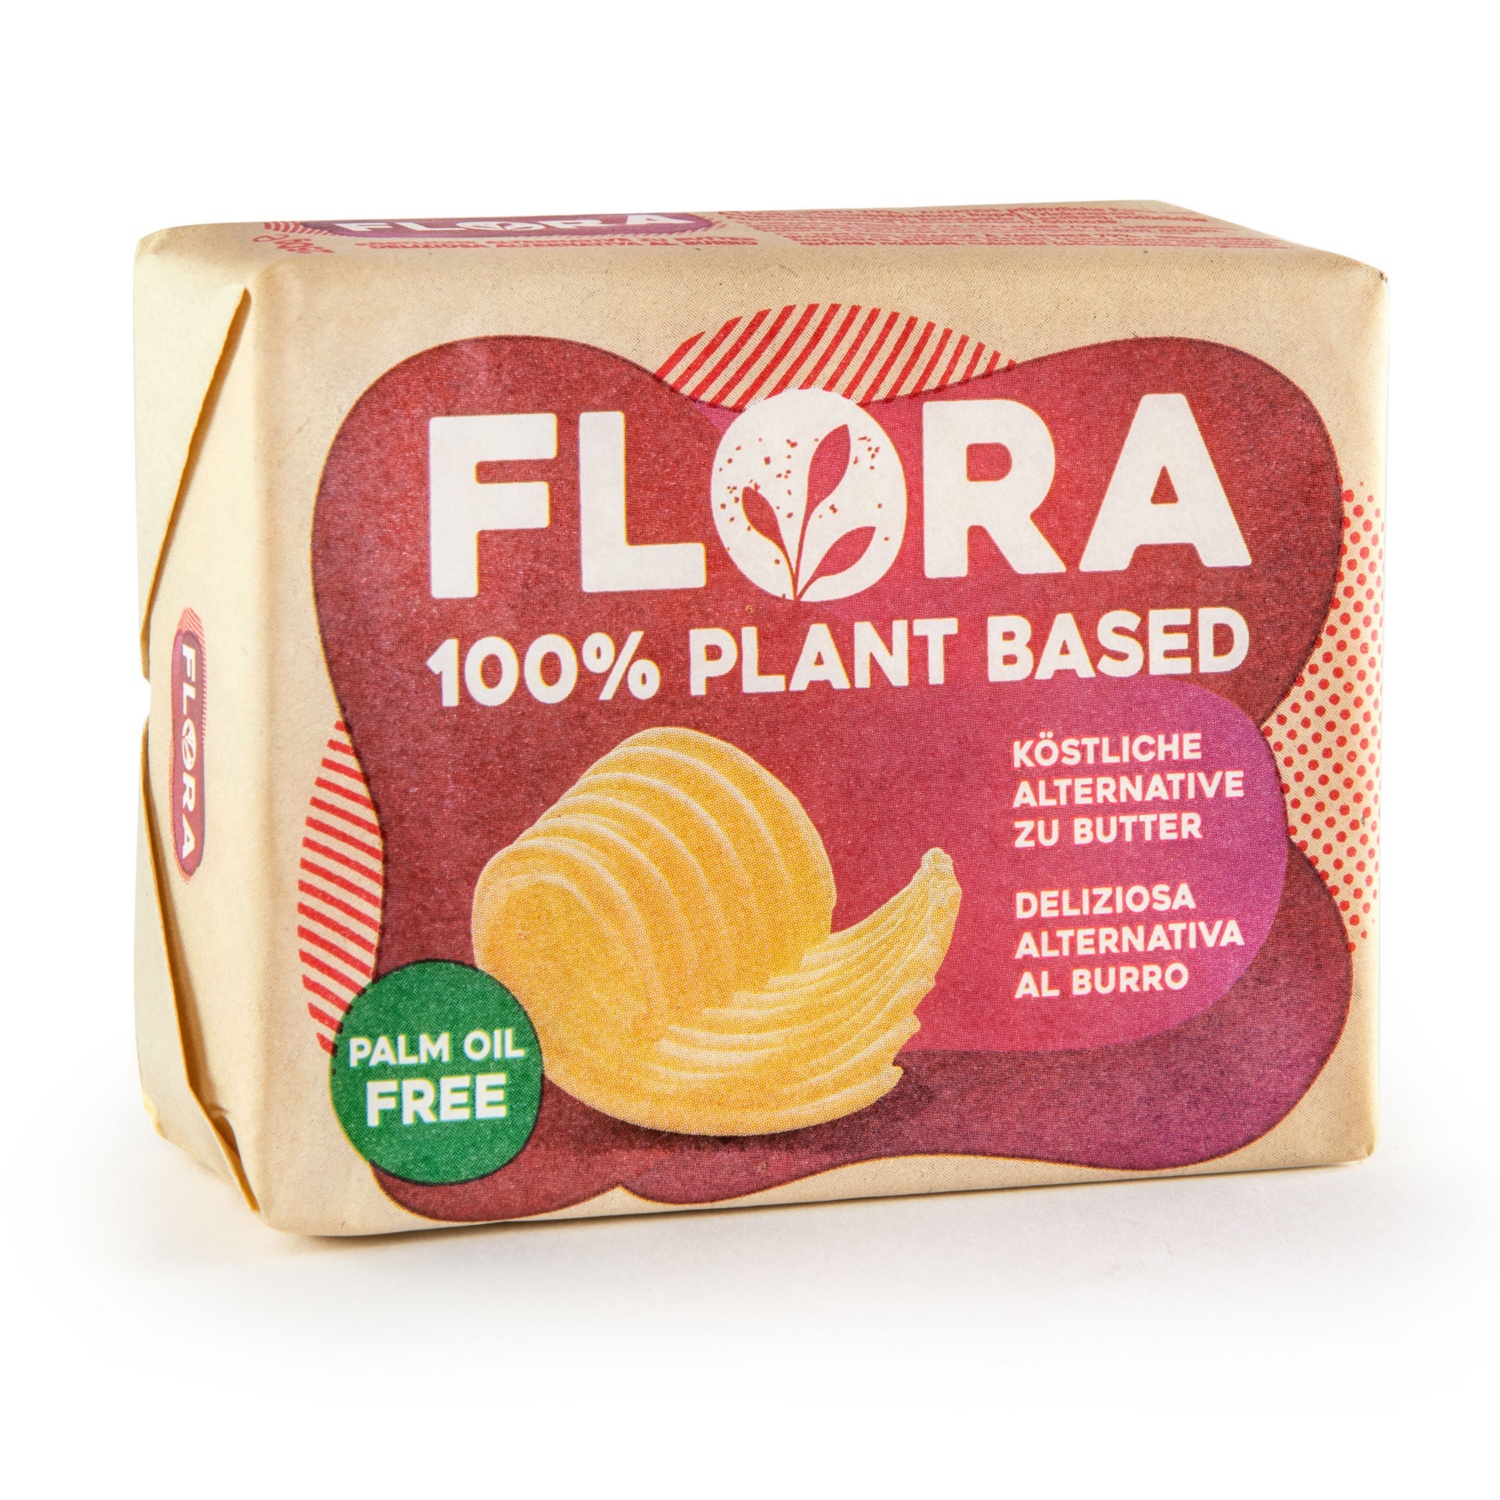 FLORA Plant